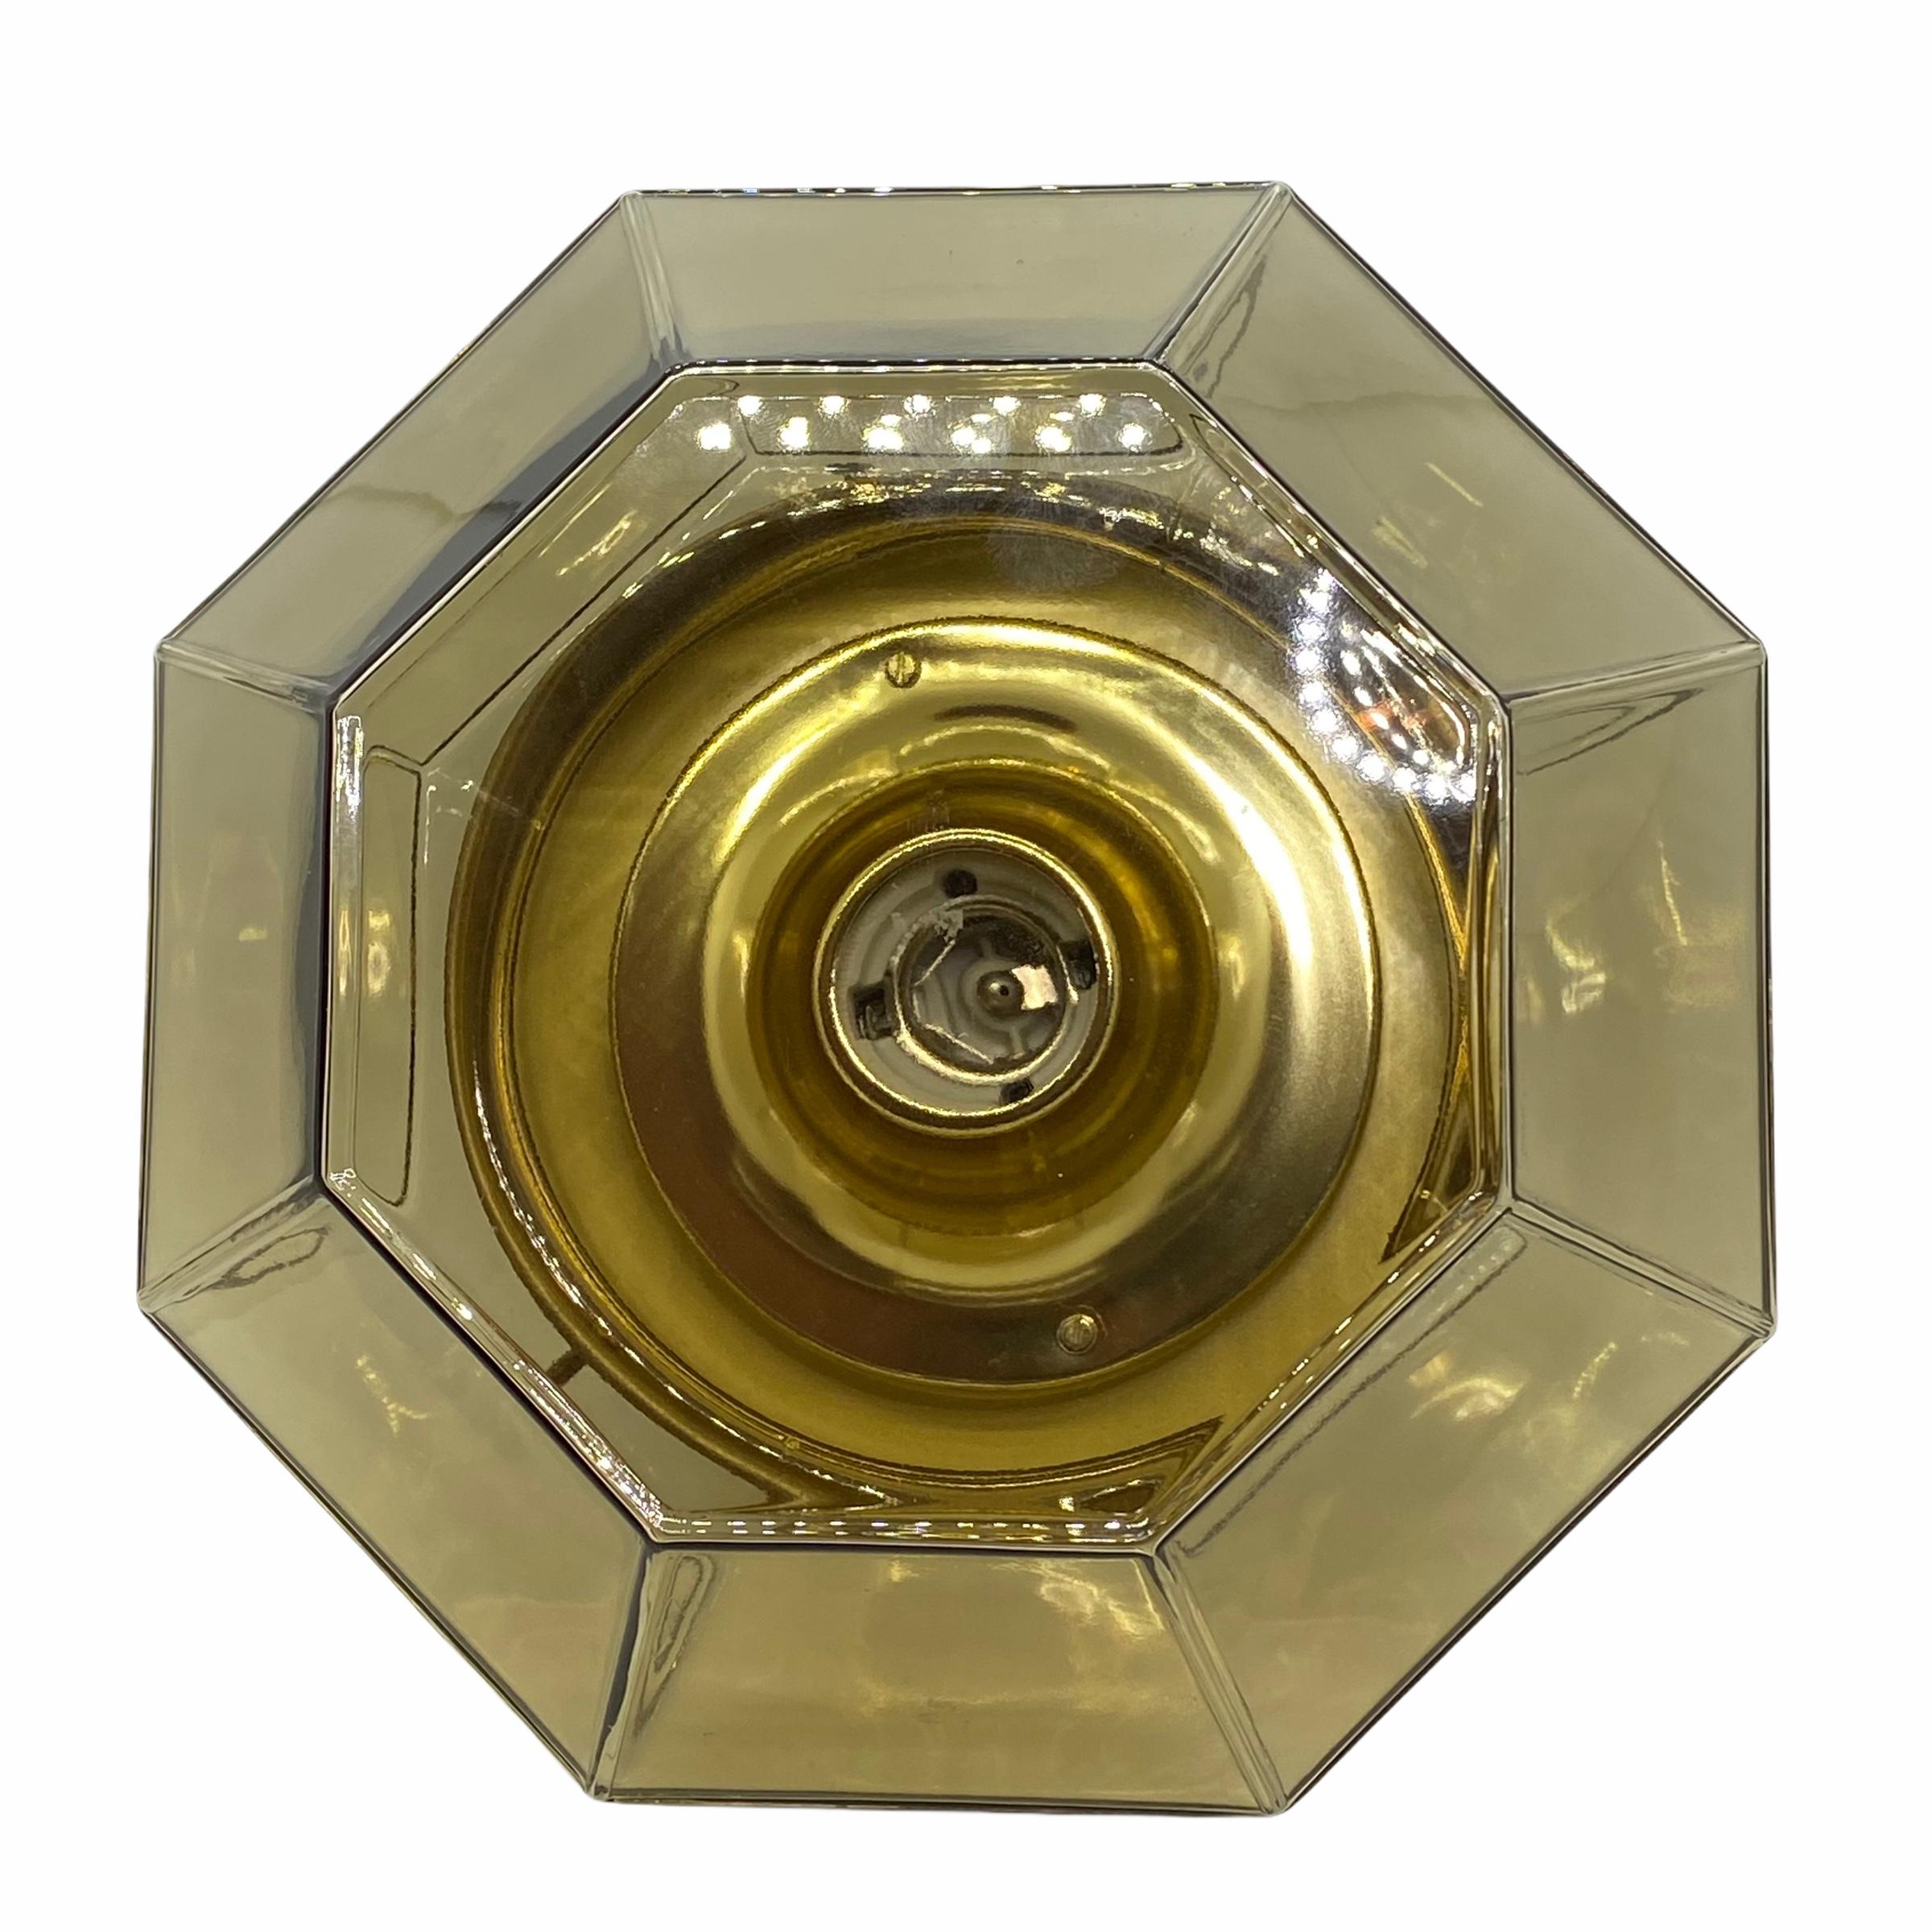 Eine schöne große Unterputzleuchte des deutschen Herstellers Glashuette Limburg. Das große geometrische Glaselement wird von einer polierten Messingplatte mit einer Lichtquelle getragen. Schönes rautenförmiges Glas auf einer Metallhalterung. Die